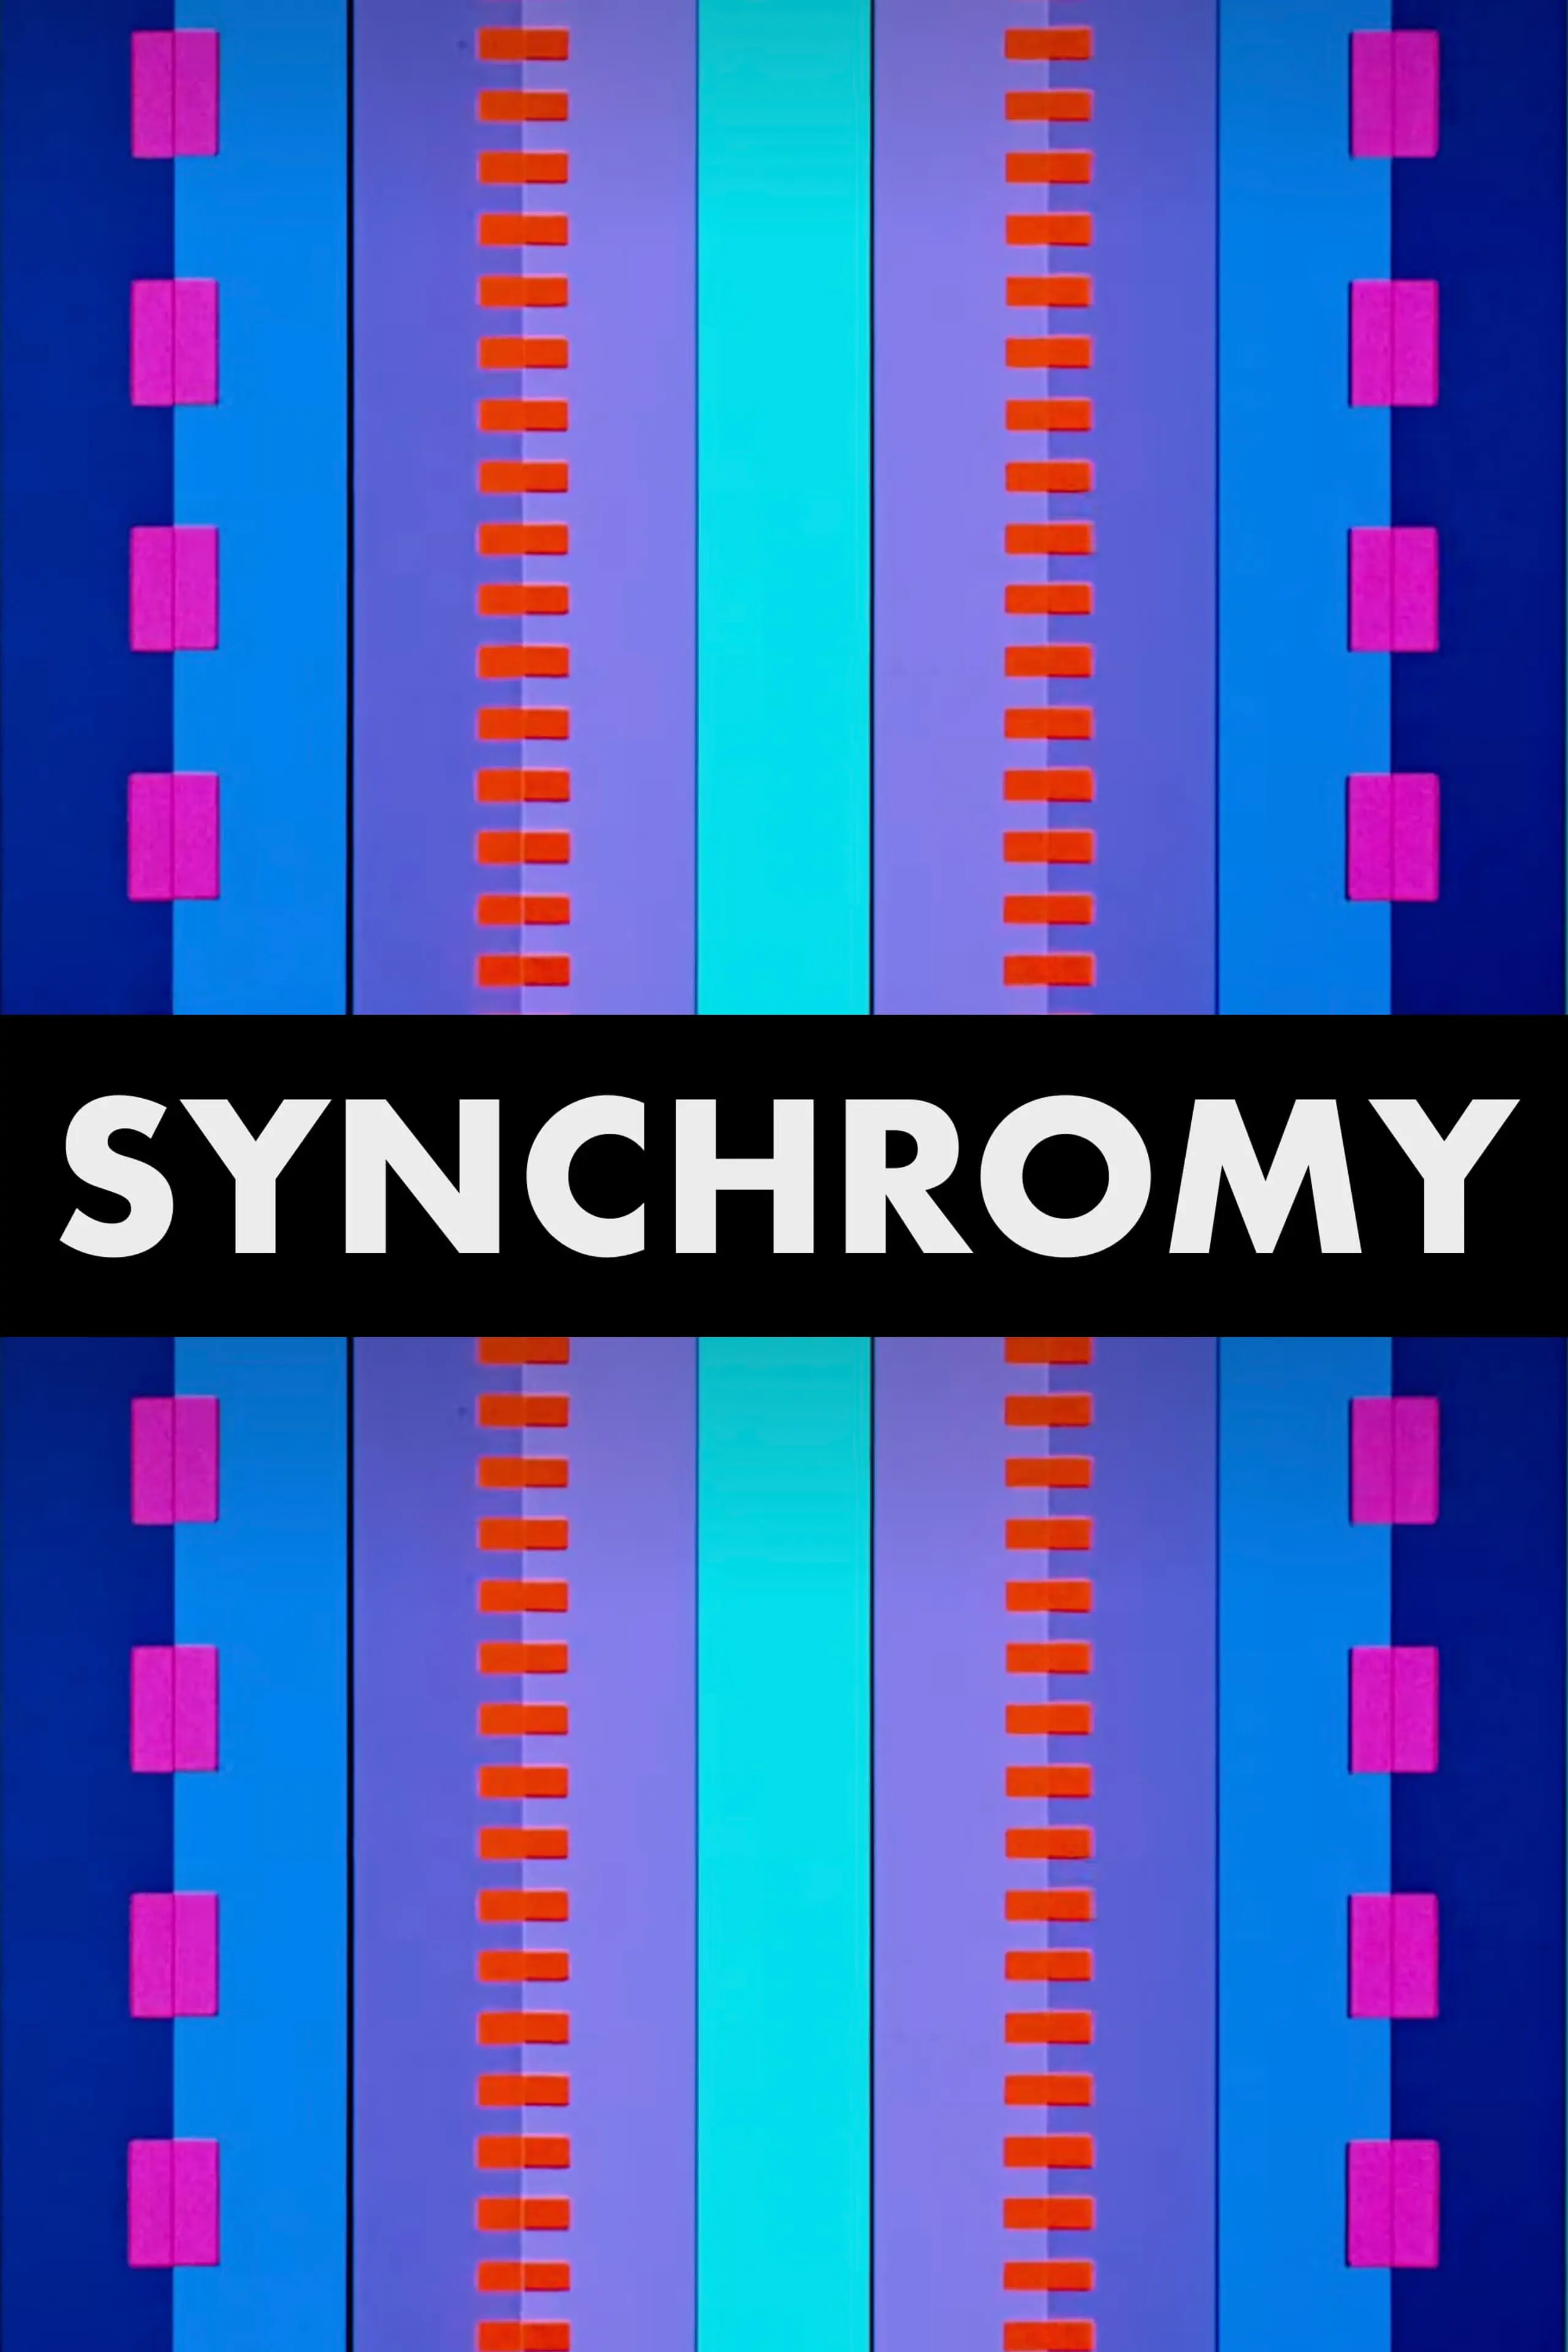 Synchromy